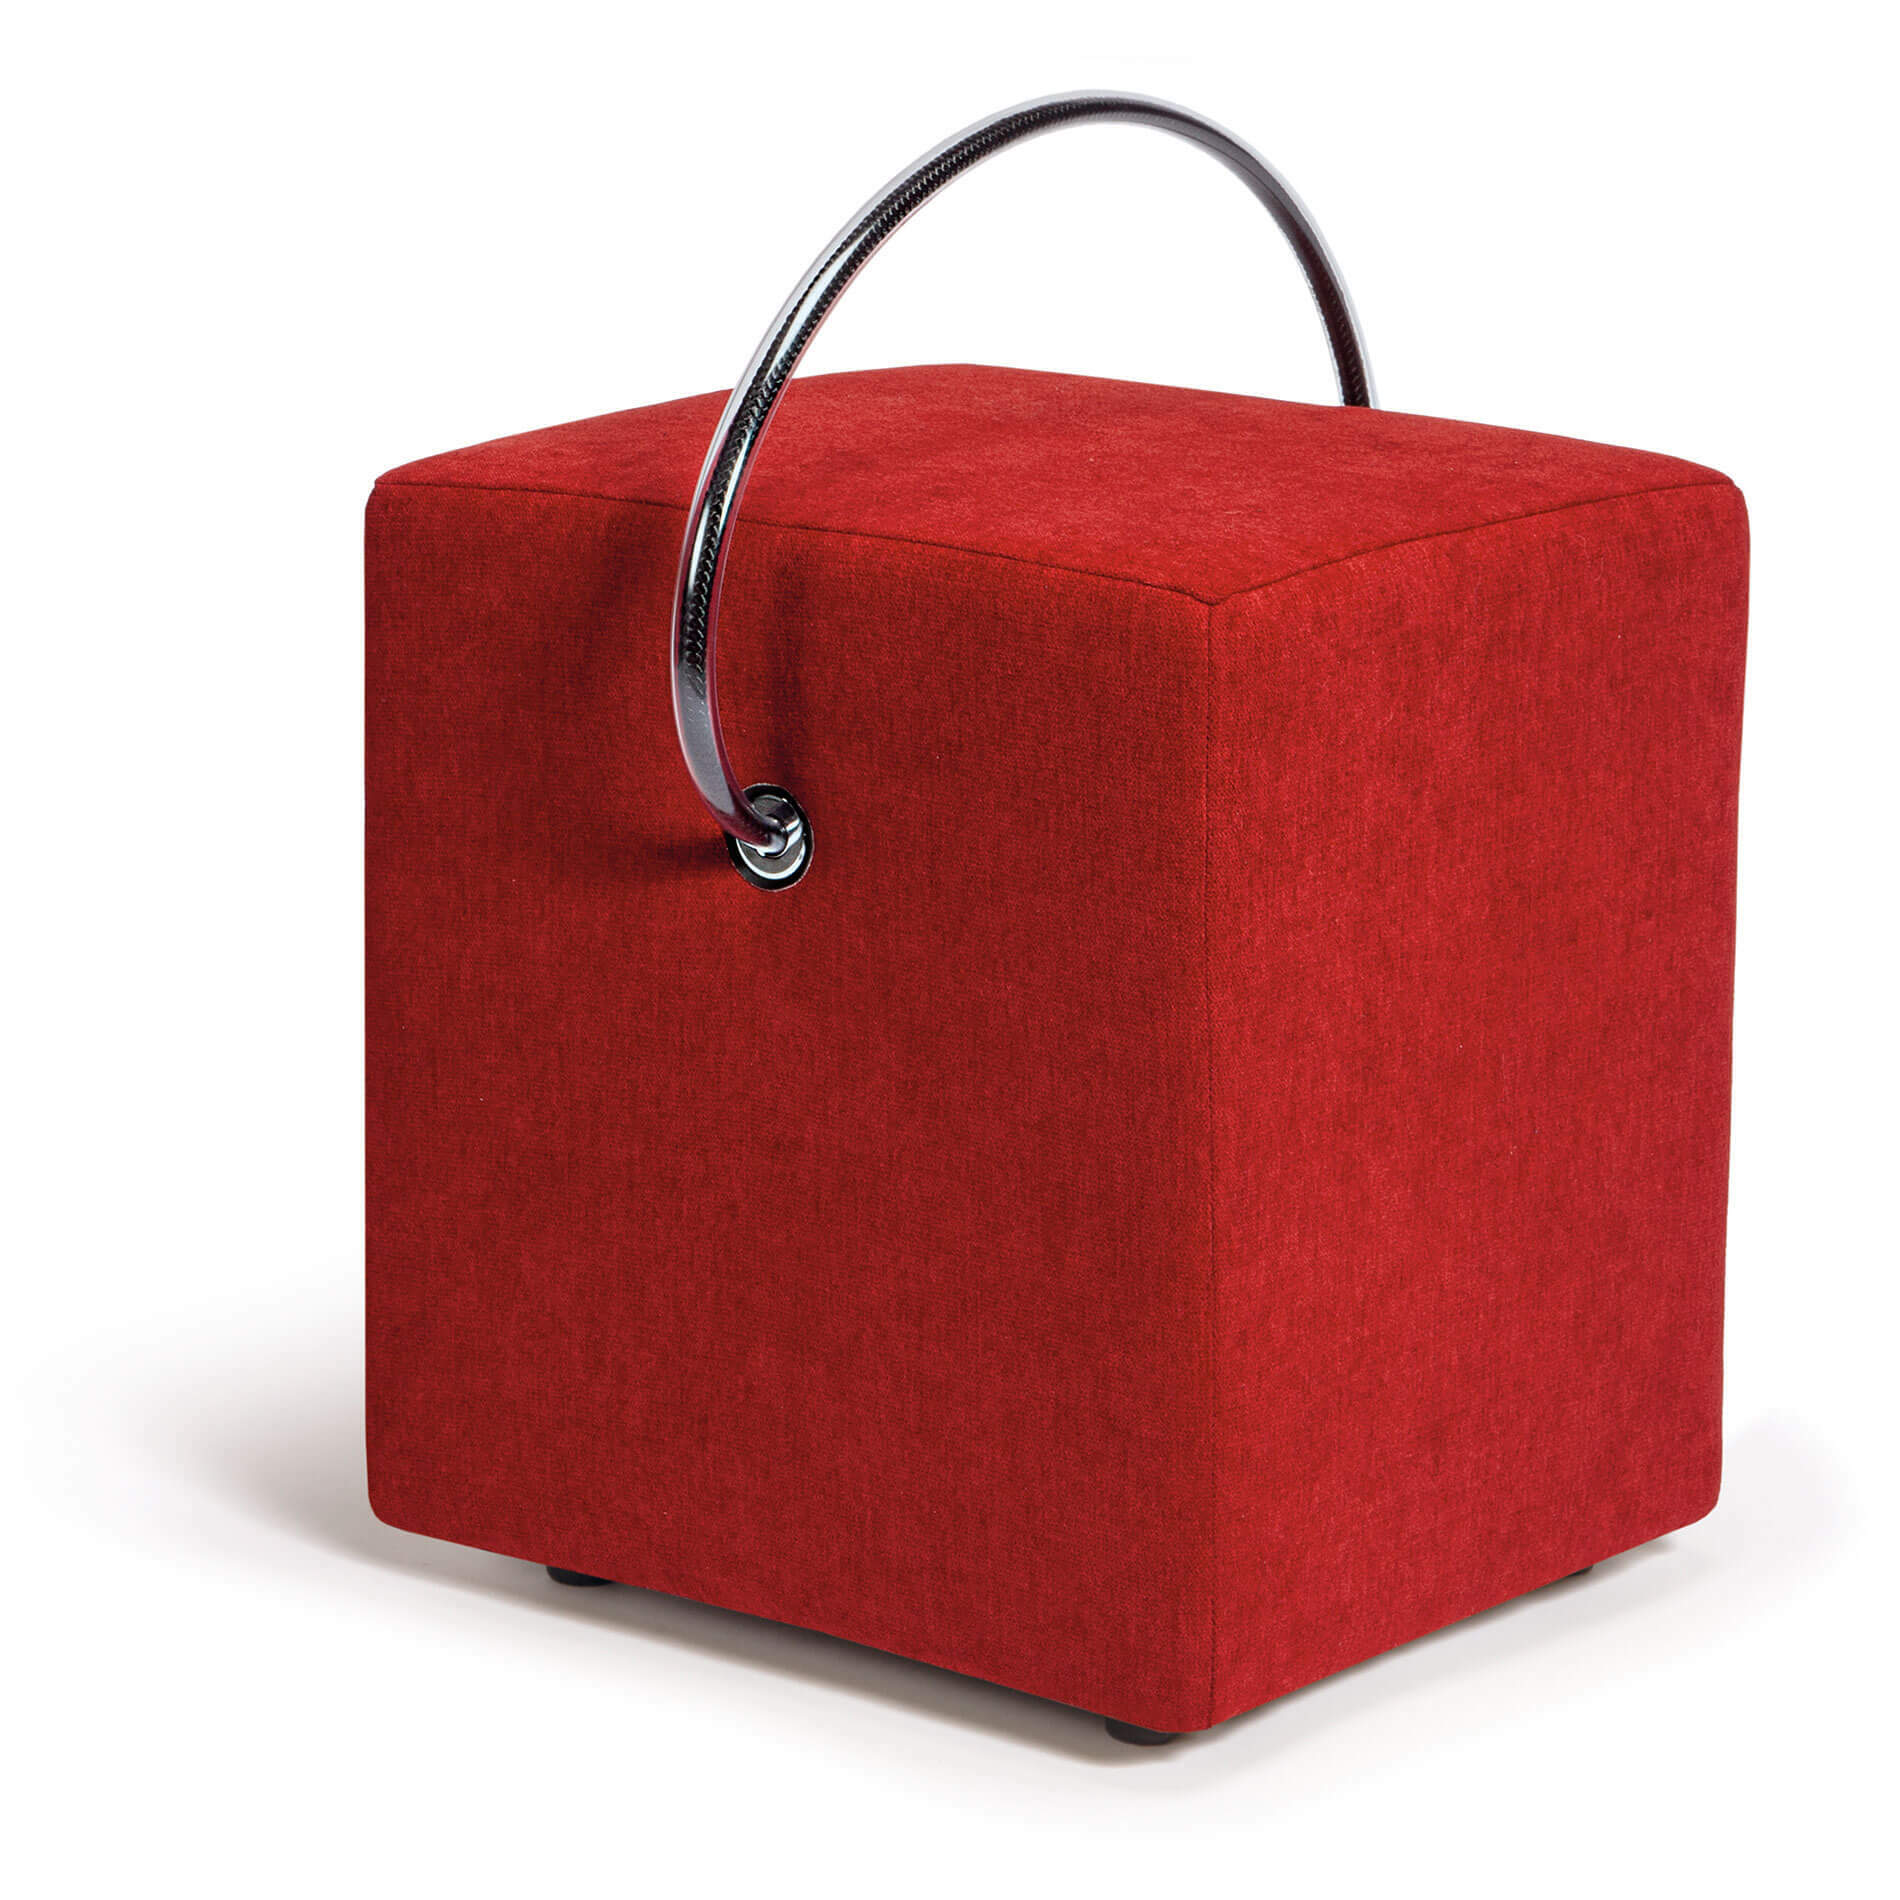 Roter Design-Hocker: Setzen Sie Akzente mit unserem handgefertigten, gepolsterten und leicht-tragbaren roten Hocker. Jetzt bestellen und auffallen!